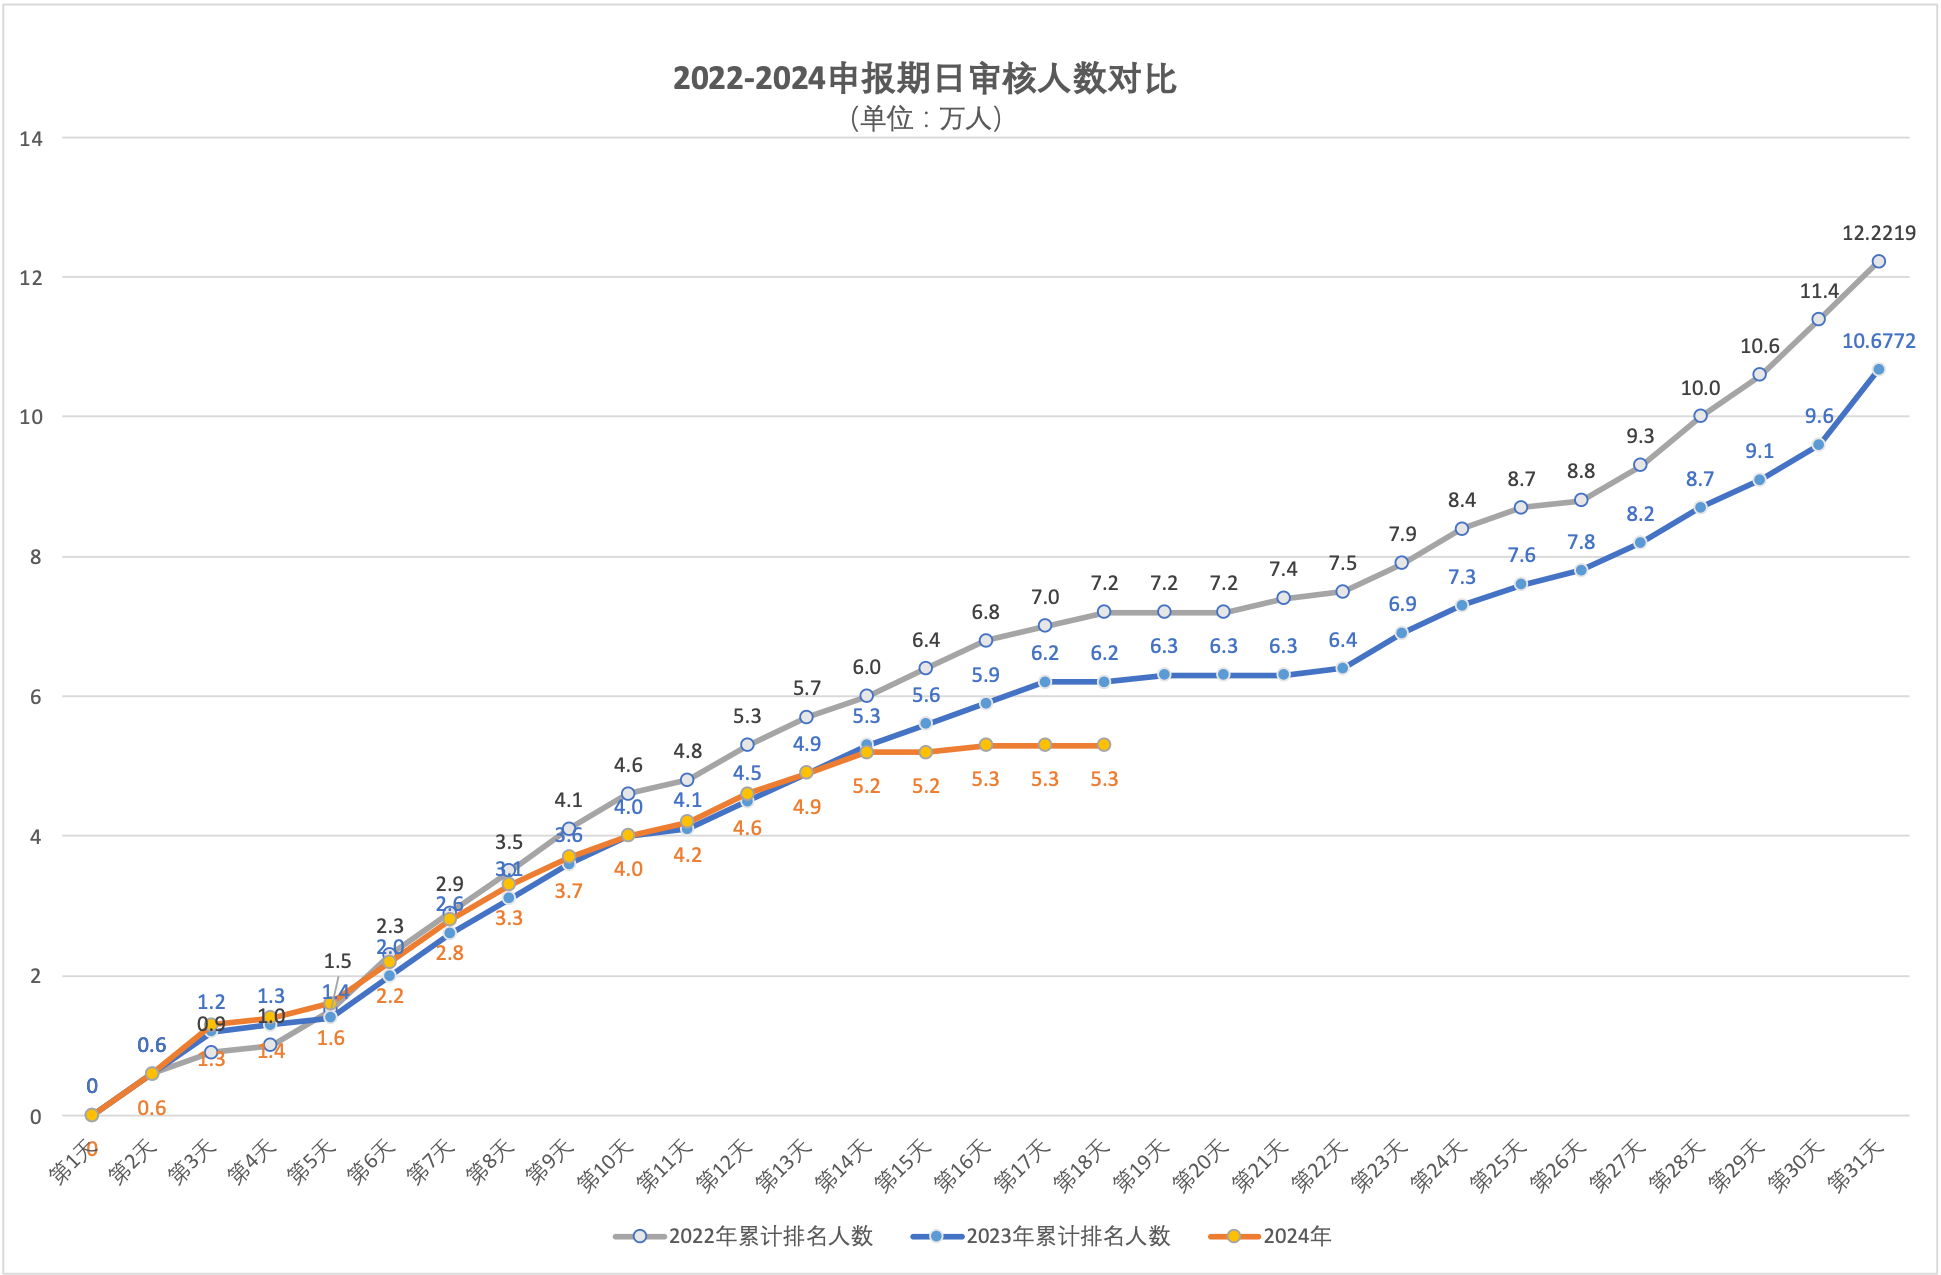 2024年5月5日北京市积分落户前6000名区间分数公布